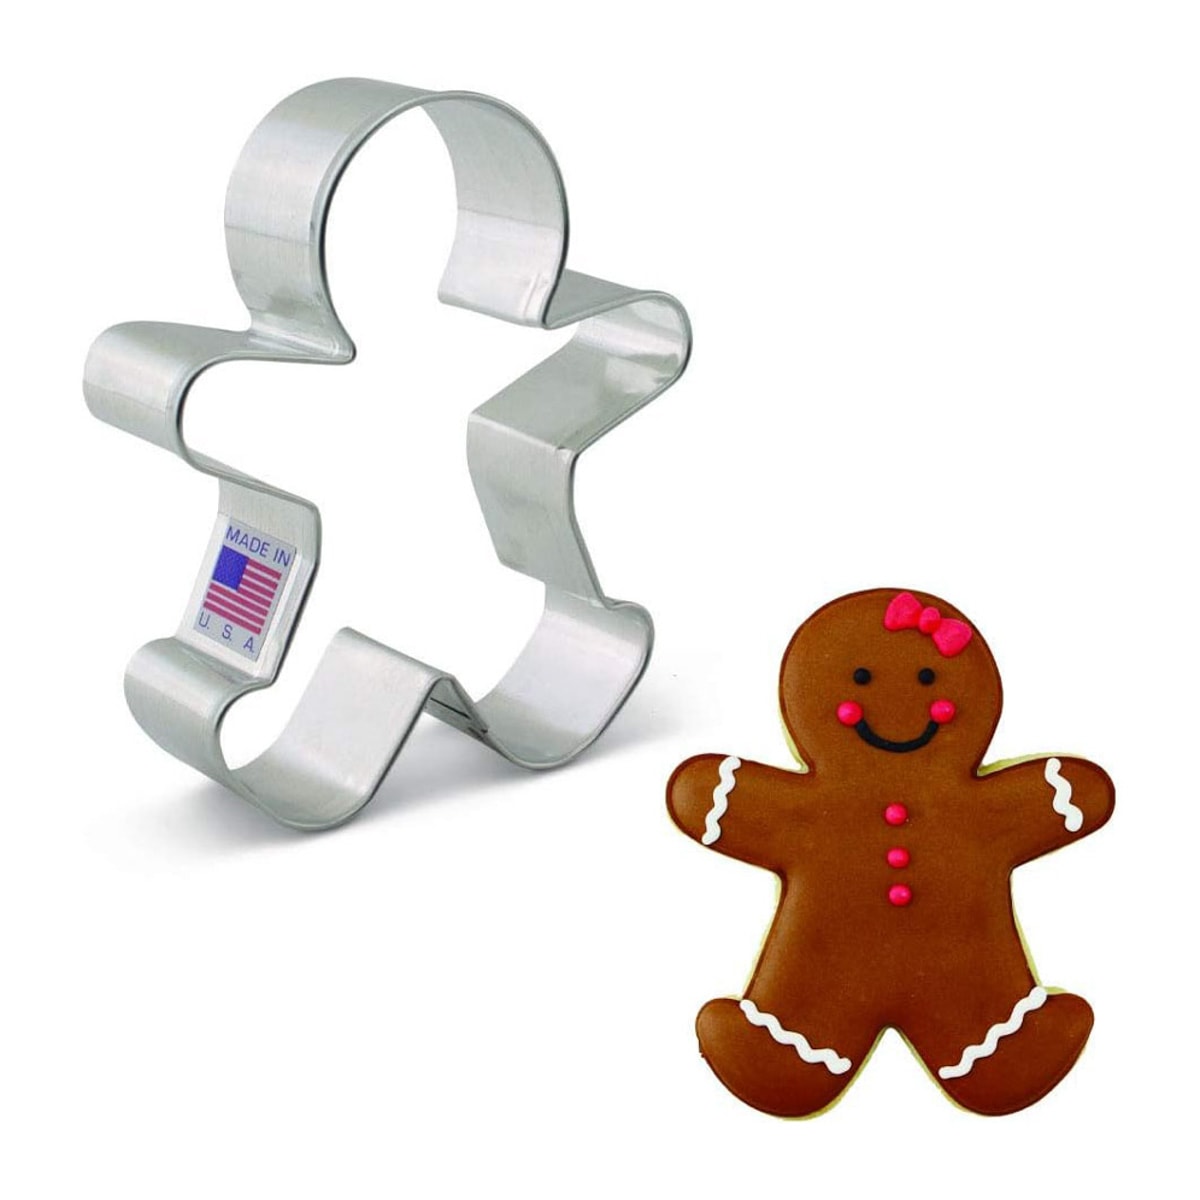 Gingerbread man cookie cutter.